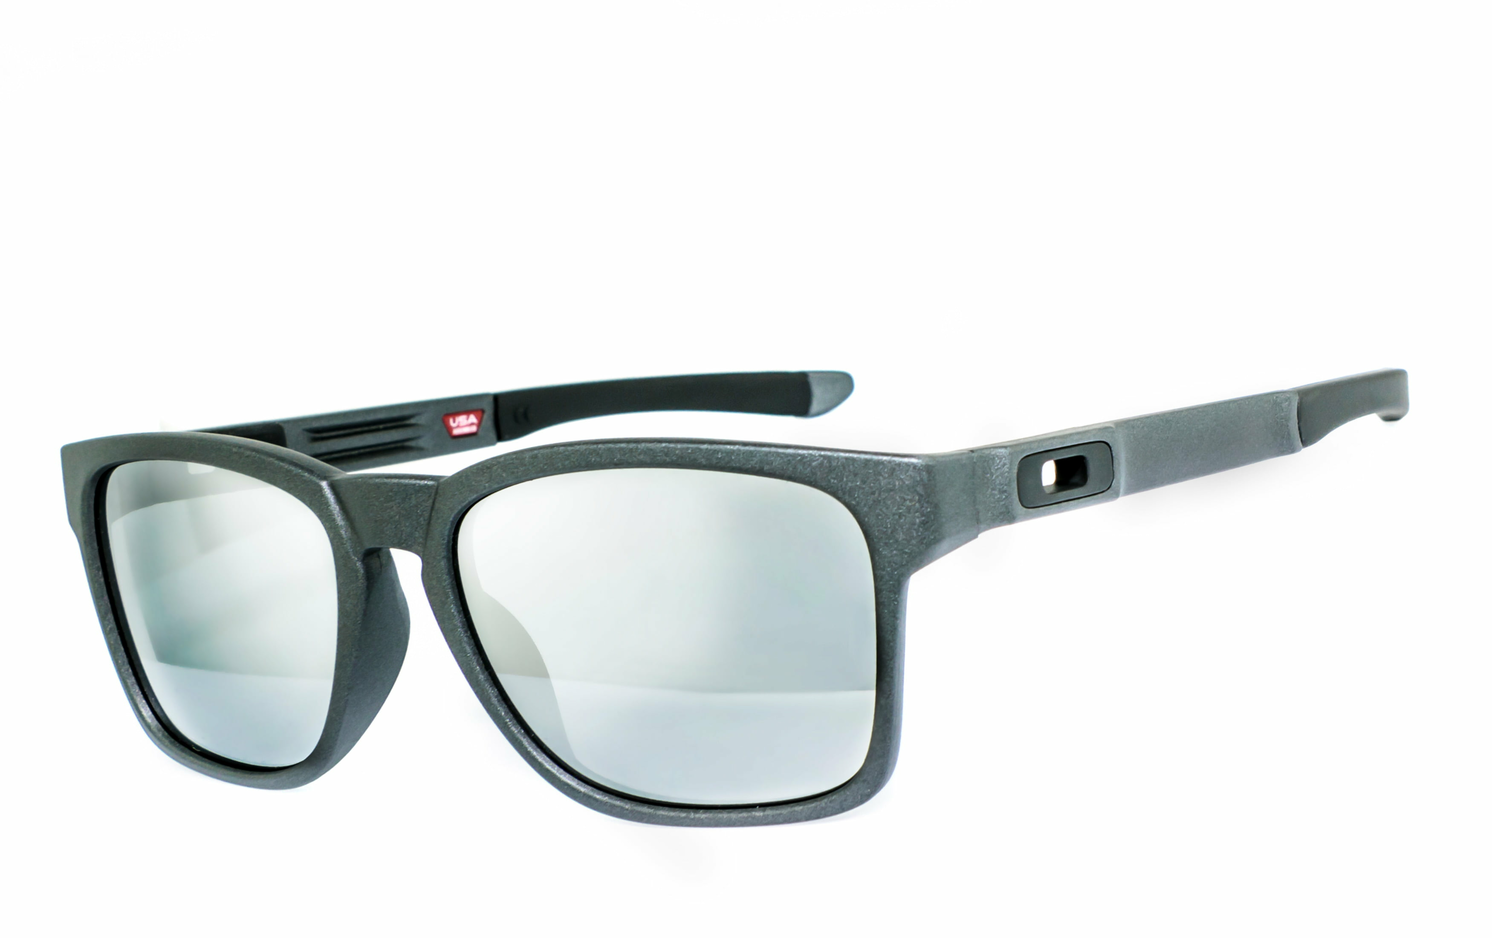 OAKLEY | CATALYST - OO9272  Sportbrille, Fahrradbrille, Sonnenbrille, Bikerbrille, Radbrille, UV400 Schutzfilter